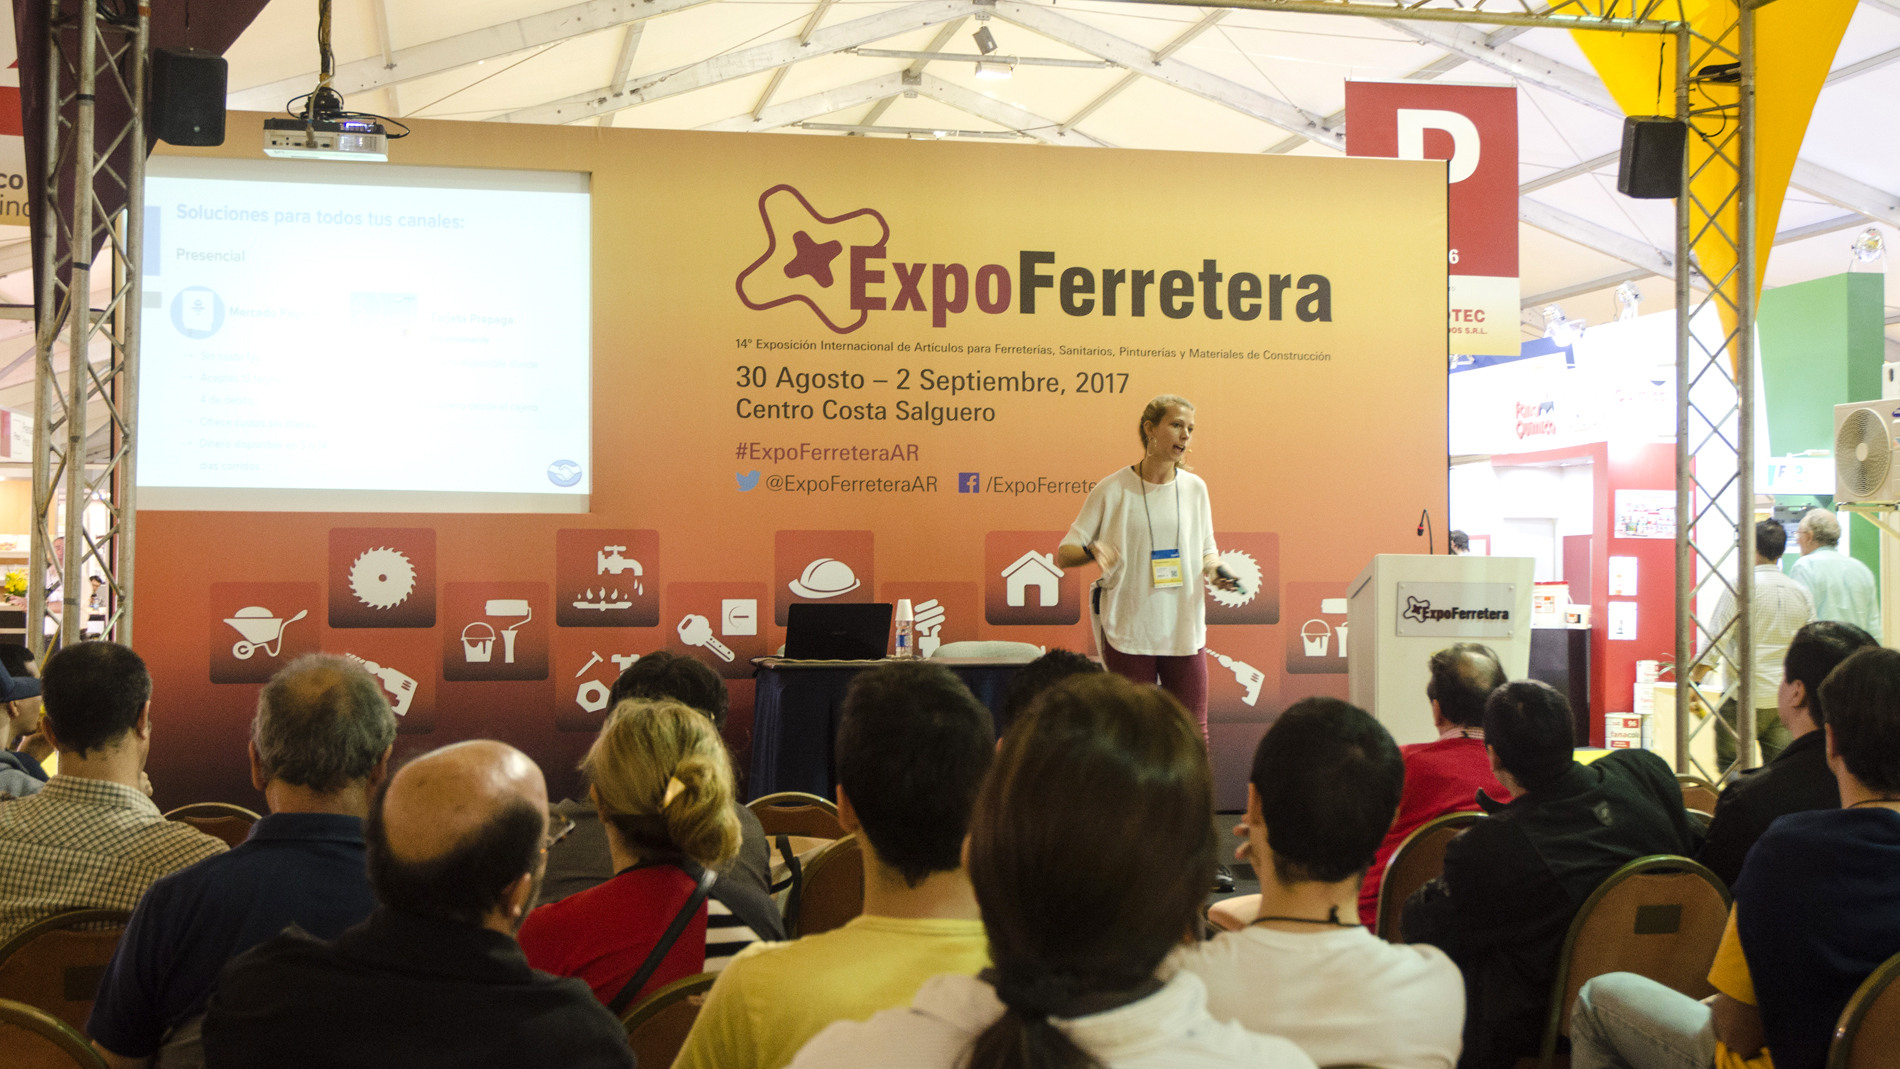 ExpoFerretera: academic activities